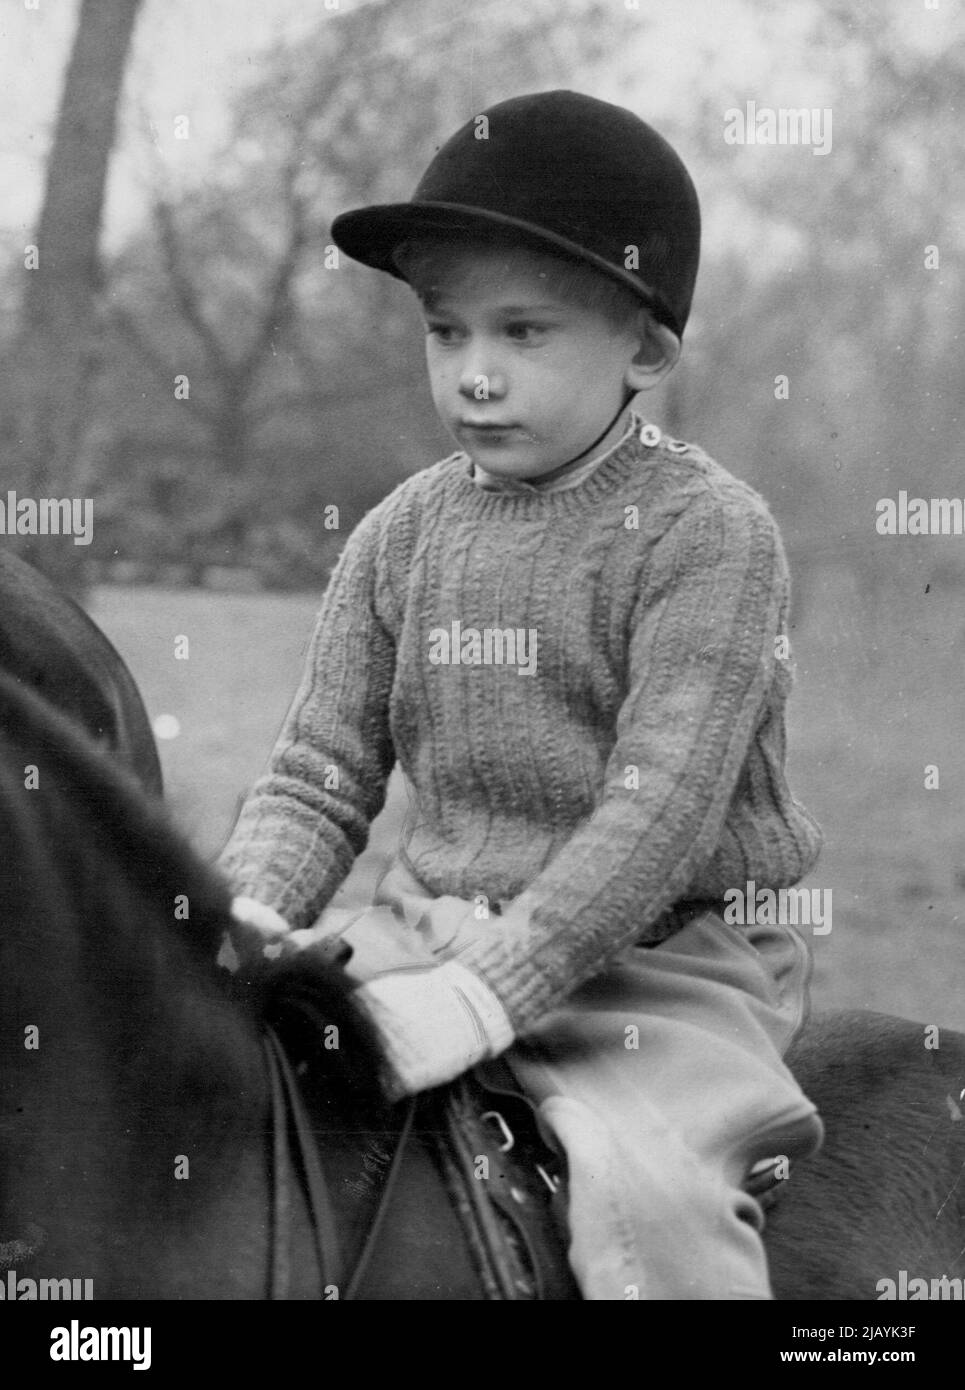 Prince geht auf einen Galopp -- Prinz Richard, fünf Jahre alter Sohn des Herzogs und Herzogin von Gloucester, zieht während einer Reitstunde in faulen Reihen, dem weltbekannten Sandstreifen im Londoner Hyde Park, seinen Pony-Sambo an. 8. März 1950. (Foto von Associated Press Photo). Stockfoto